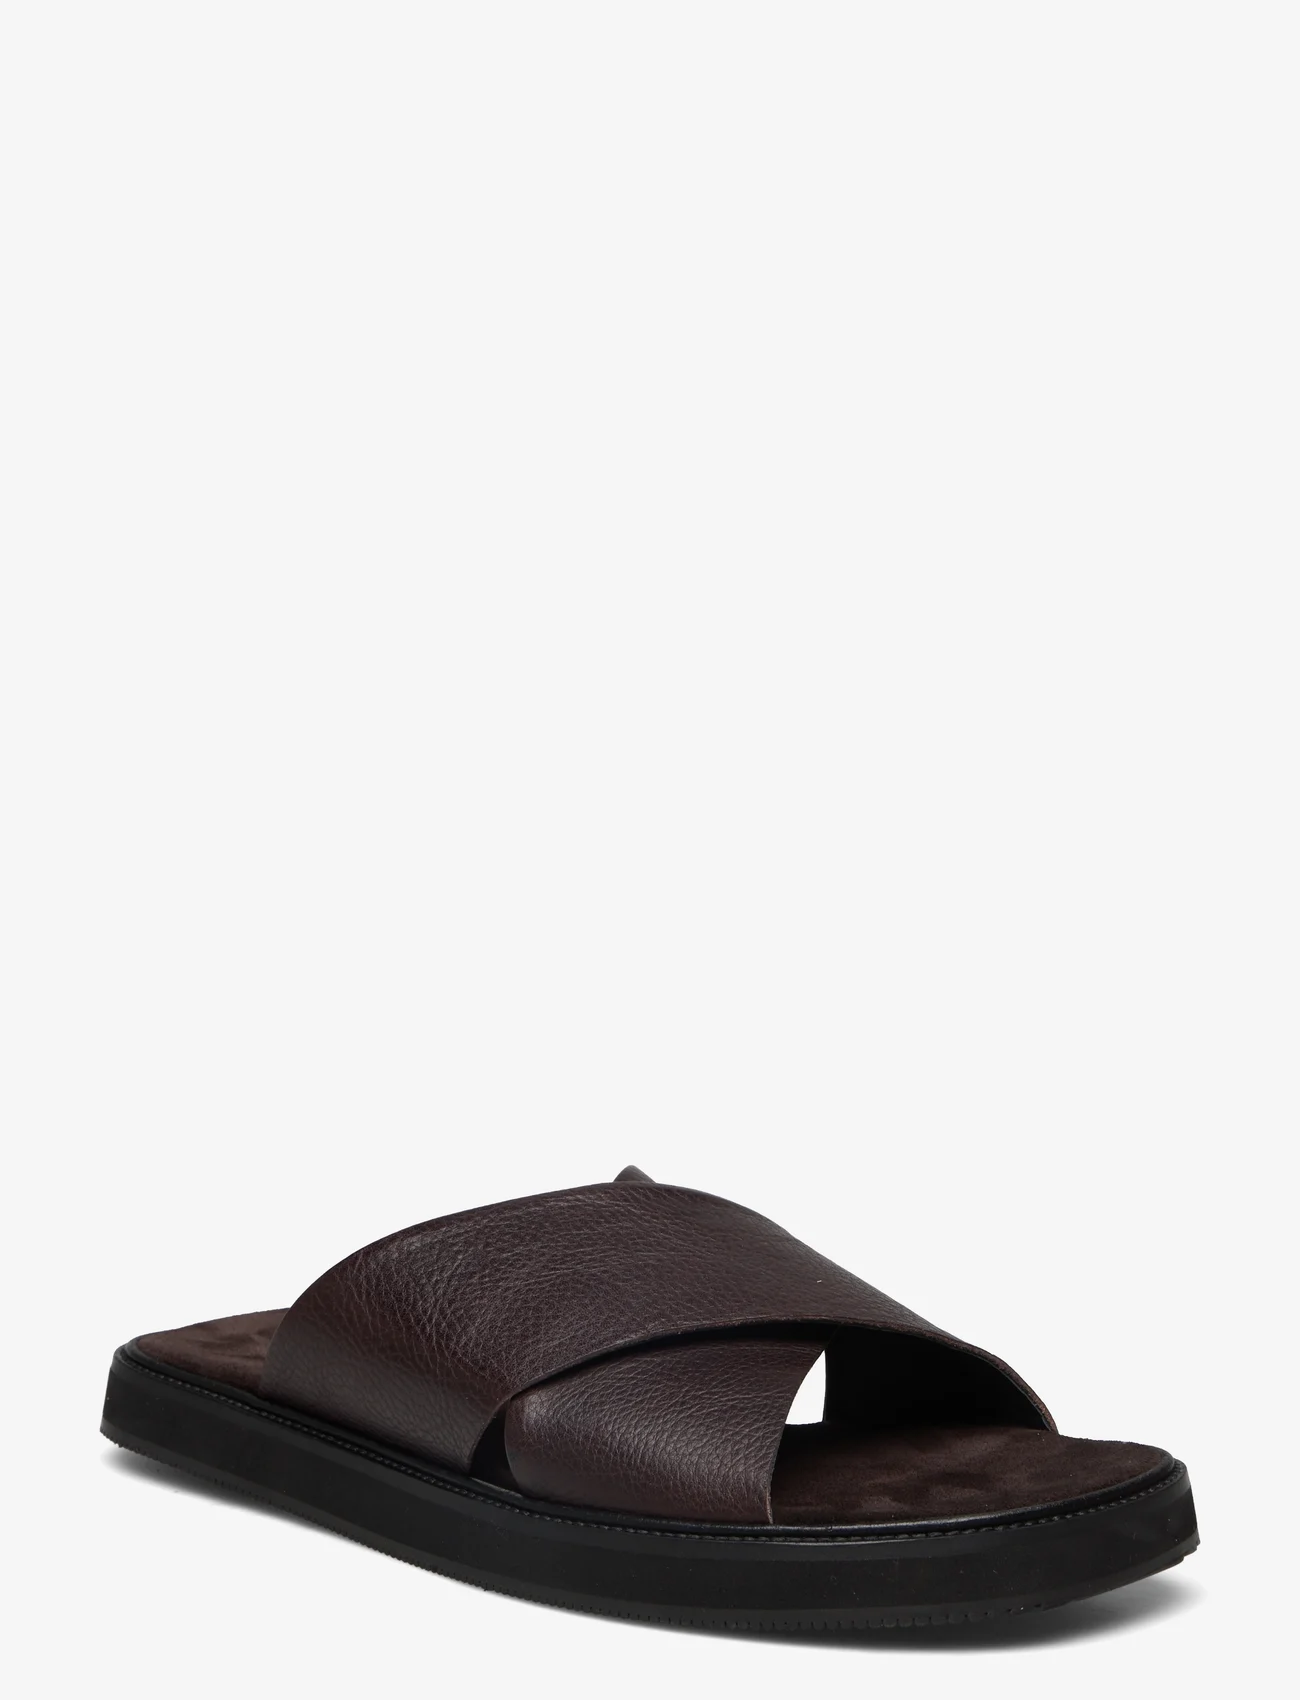 ANGULUS - Sandals - flat - open toe - op - sandales - 2193/2505 darkbrown/darkbrown - 0